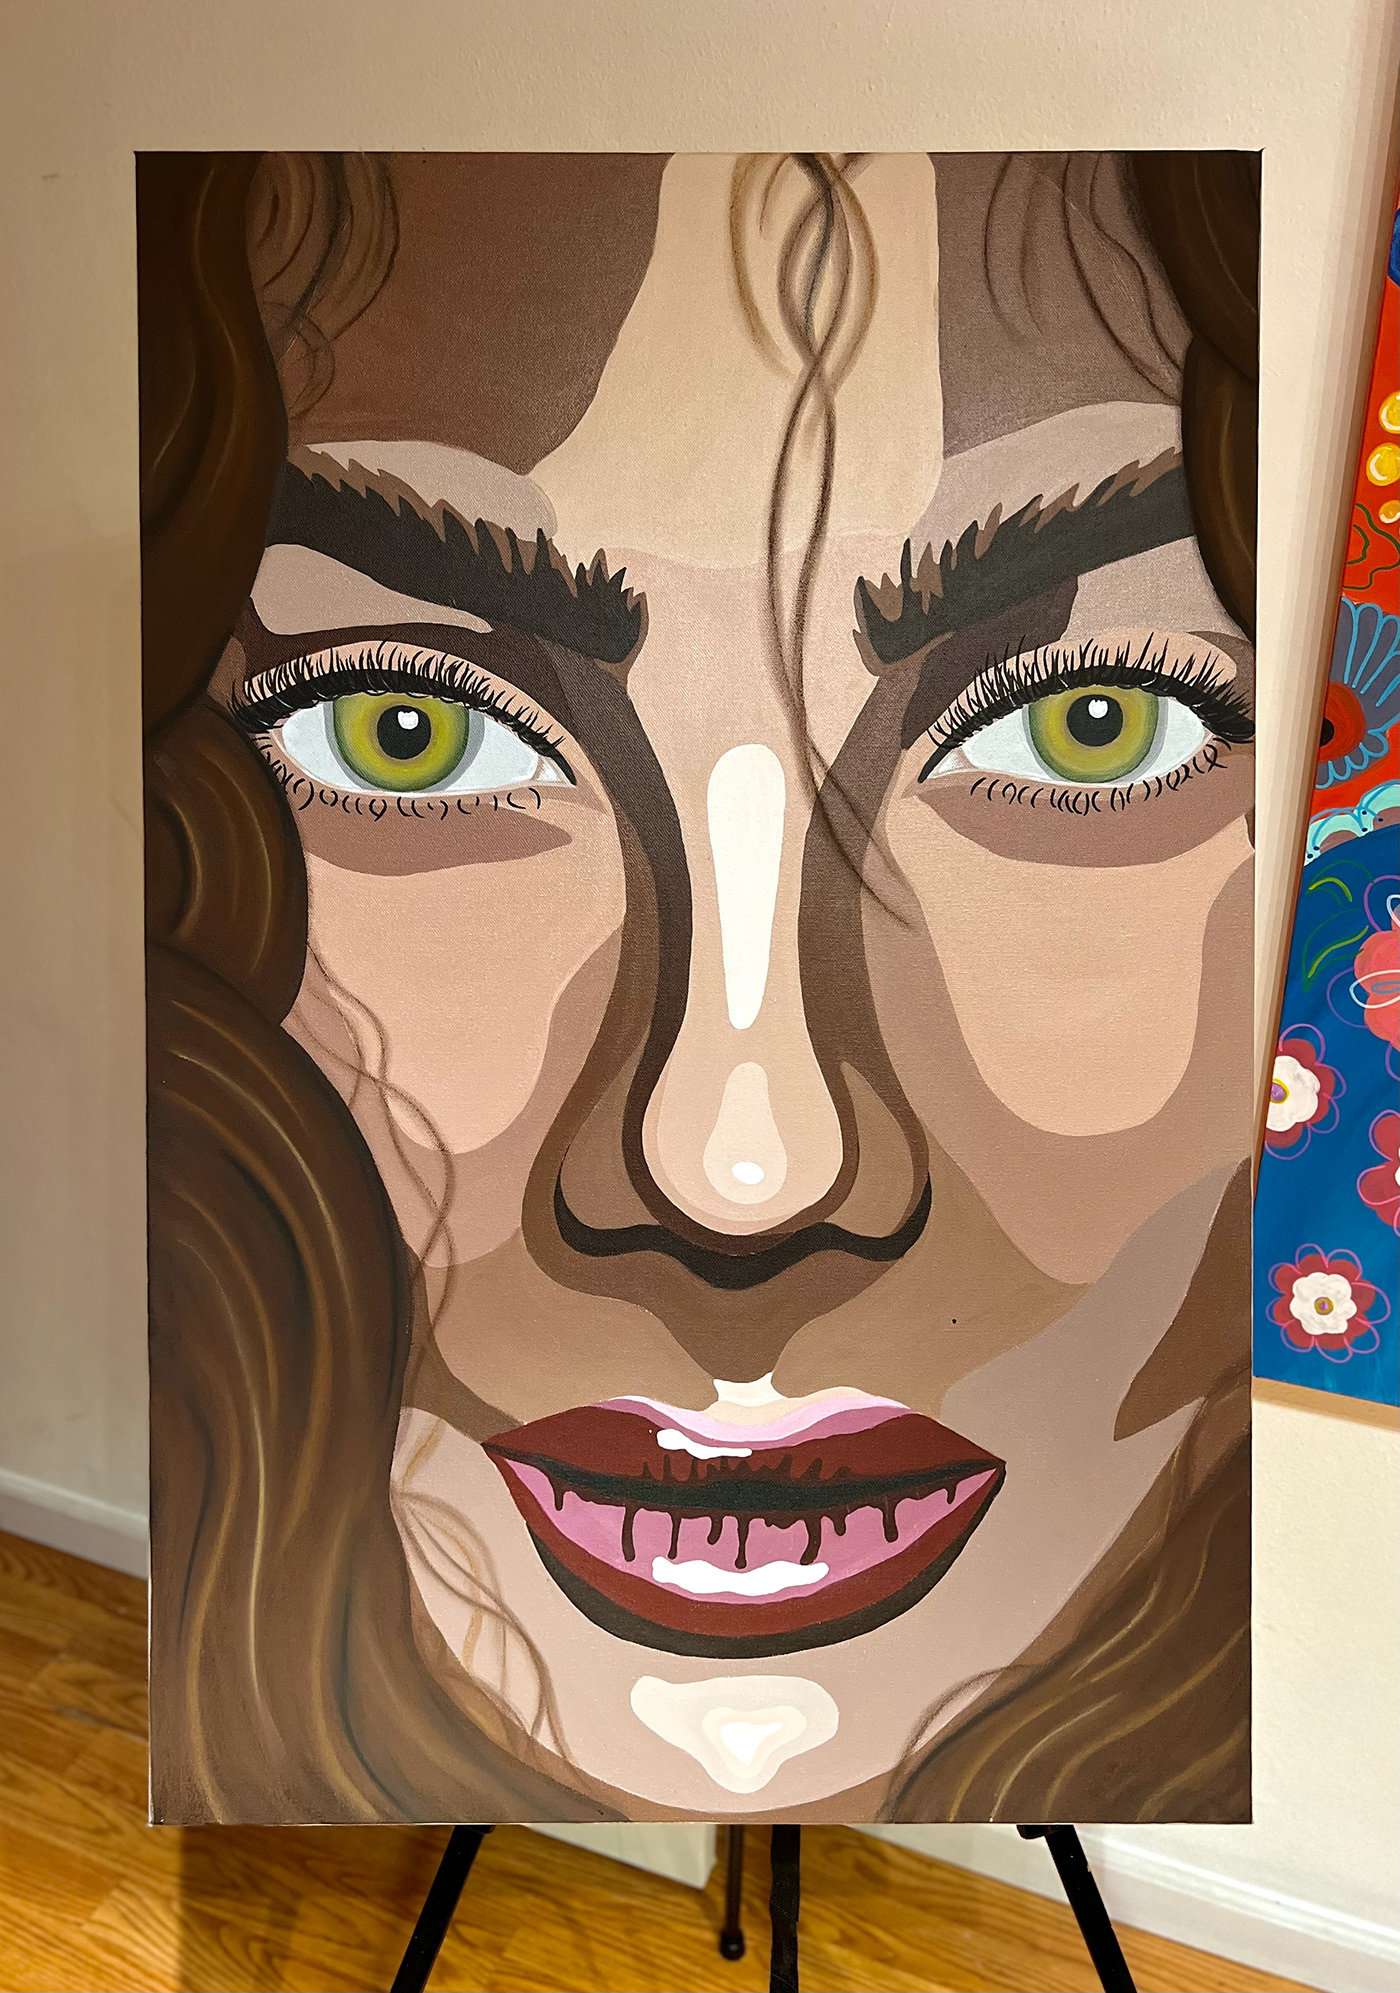 Acrylic paint artist Digital Art  businesswomen